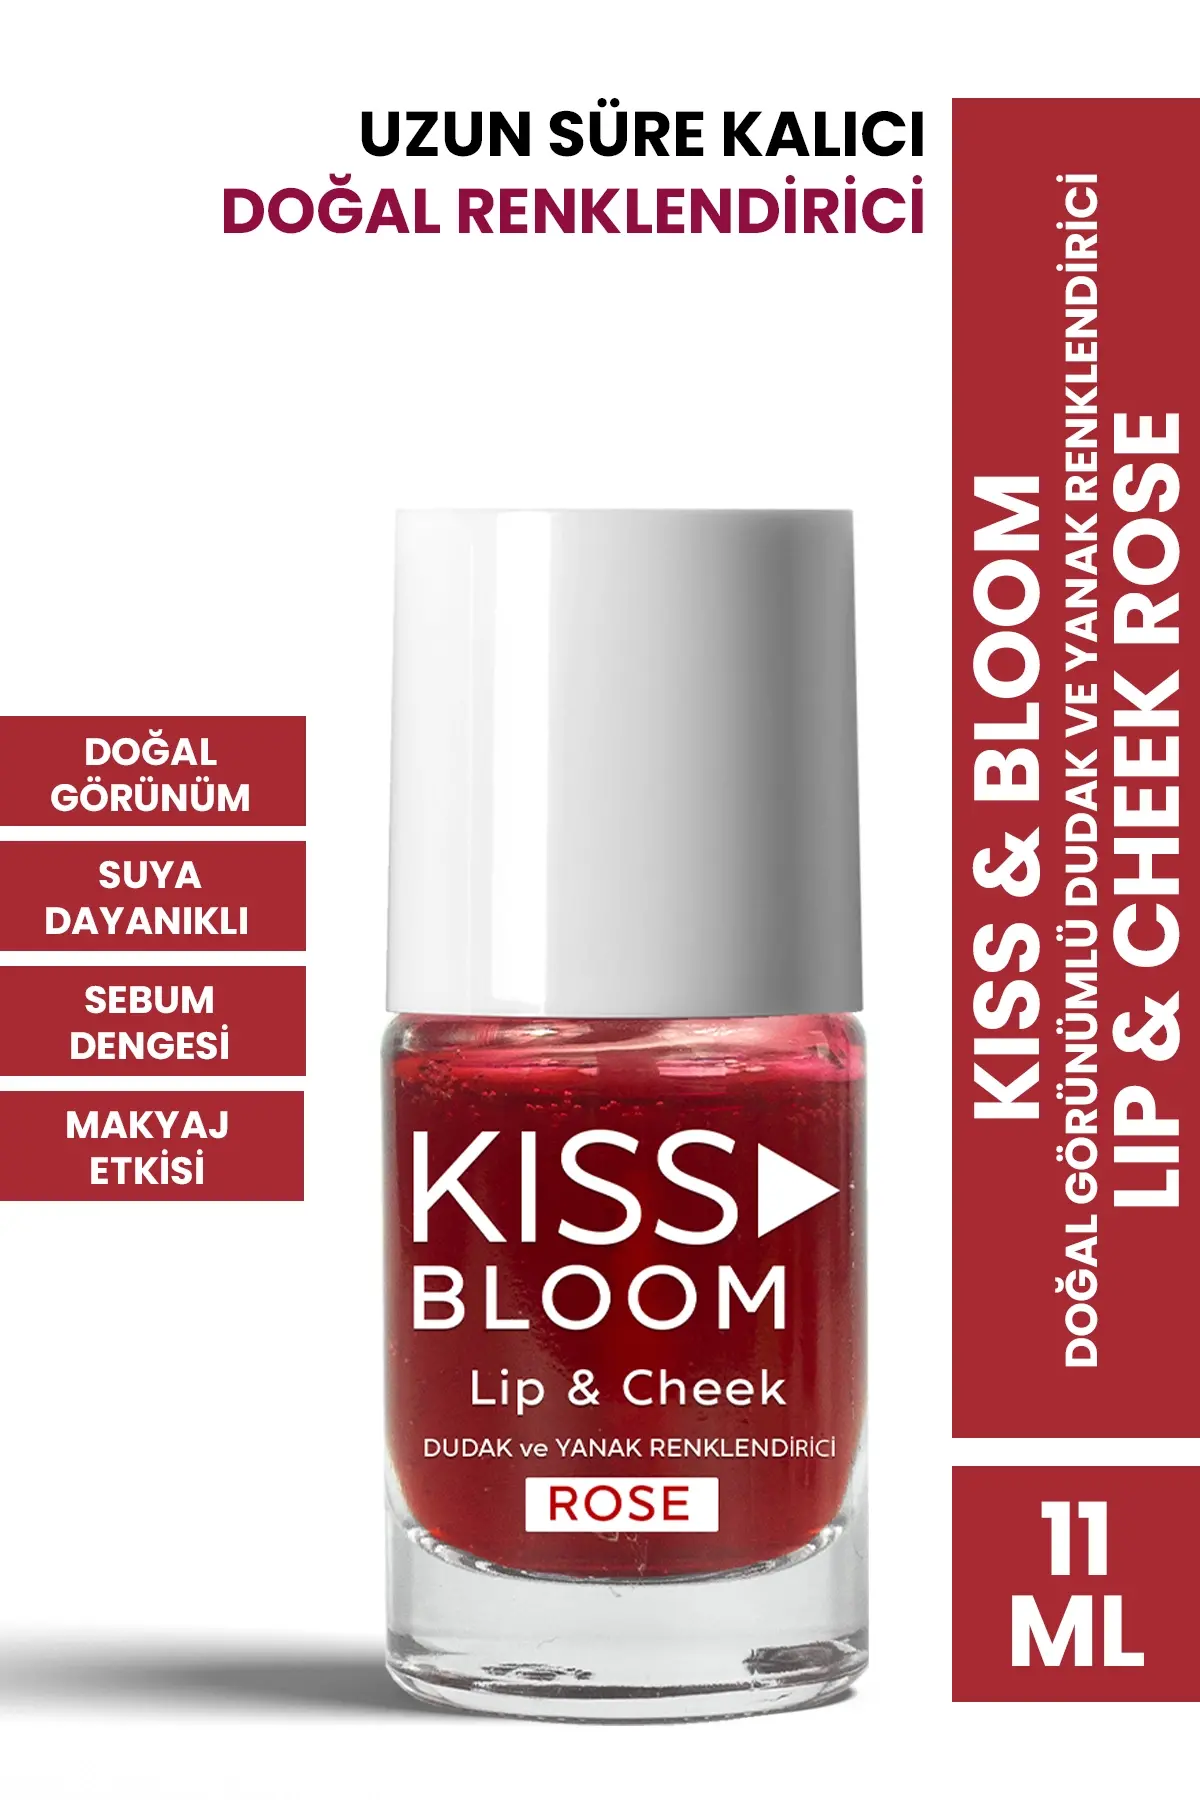 PROCSIN Kiss & Bloom Doğal Görünümlü Dudak ve Yanak Renklendirici Lip & Cheek Rose 11 ml - 1